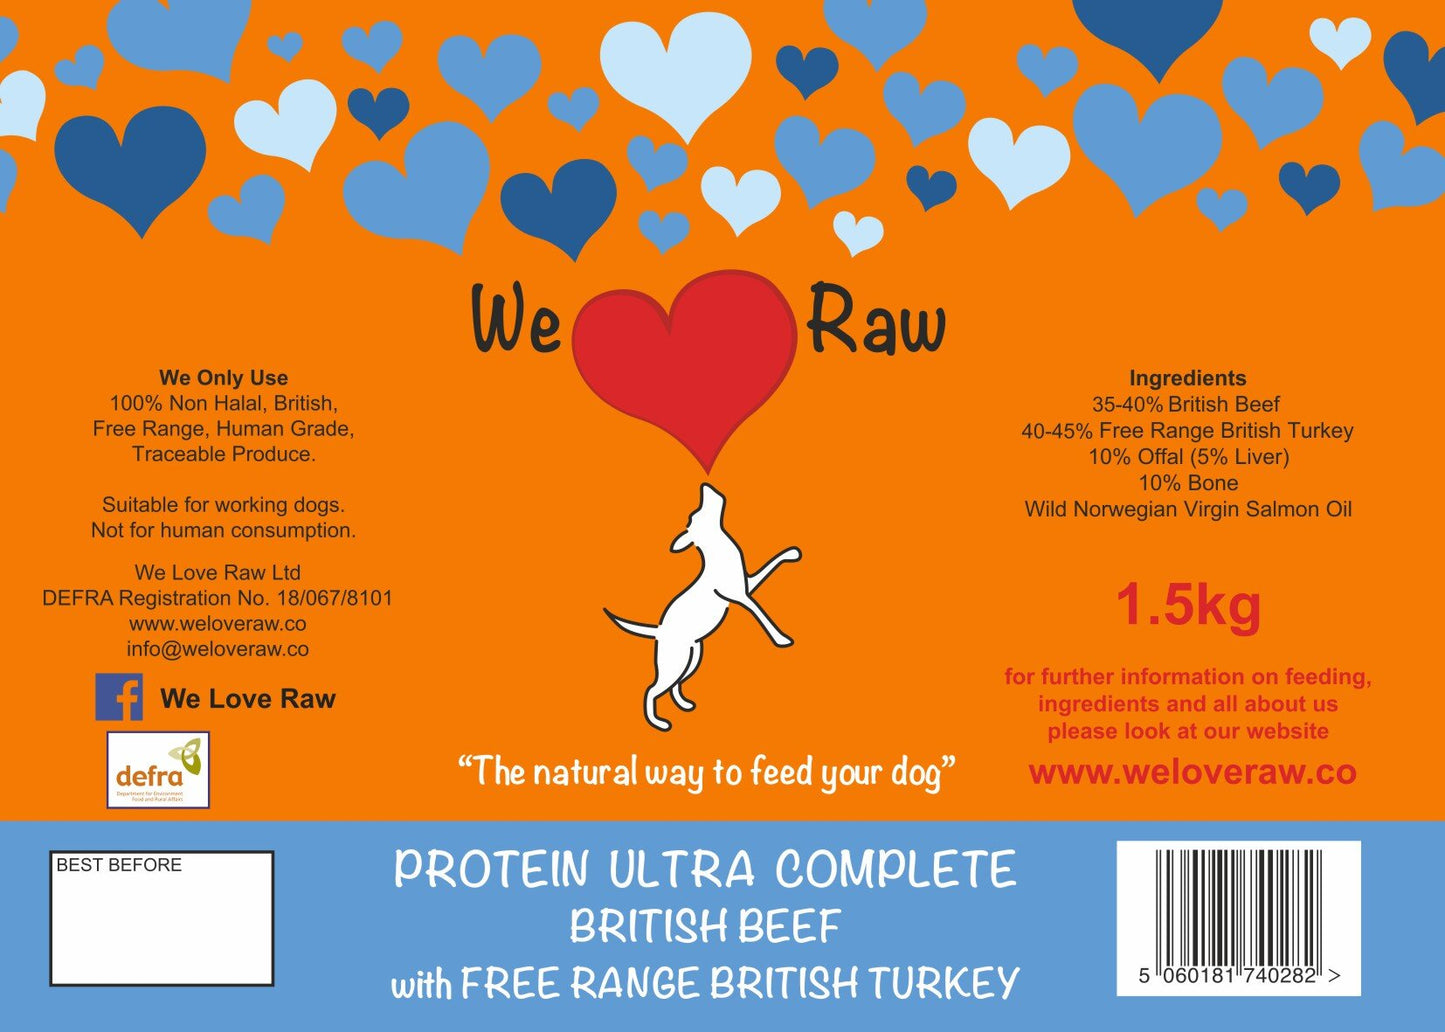 Protein Ultra Complete: British Beef with Free Range British Turkey